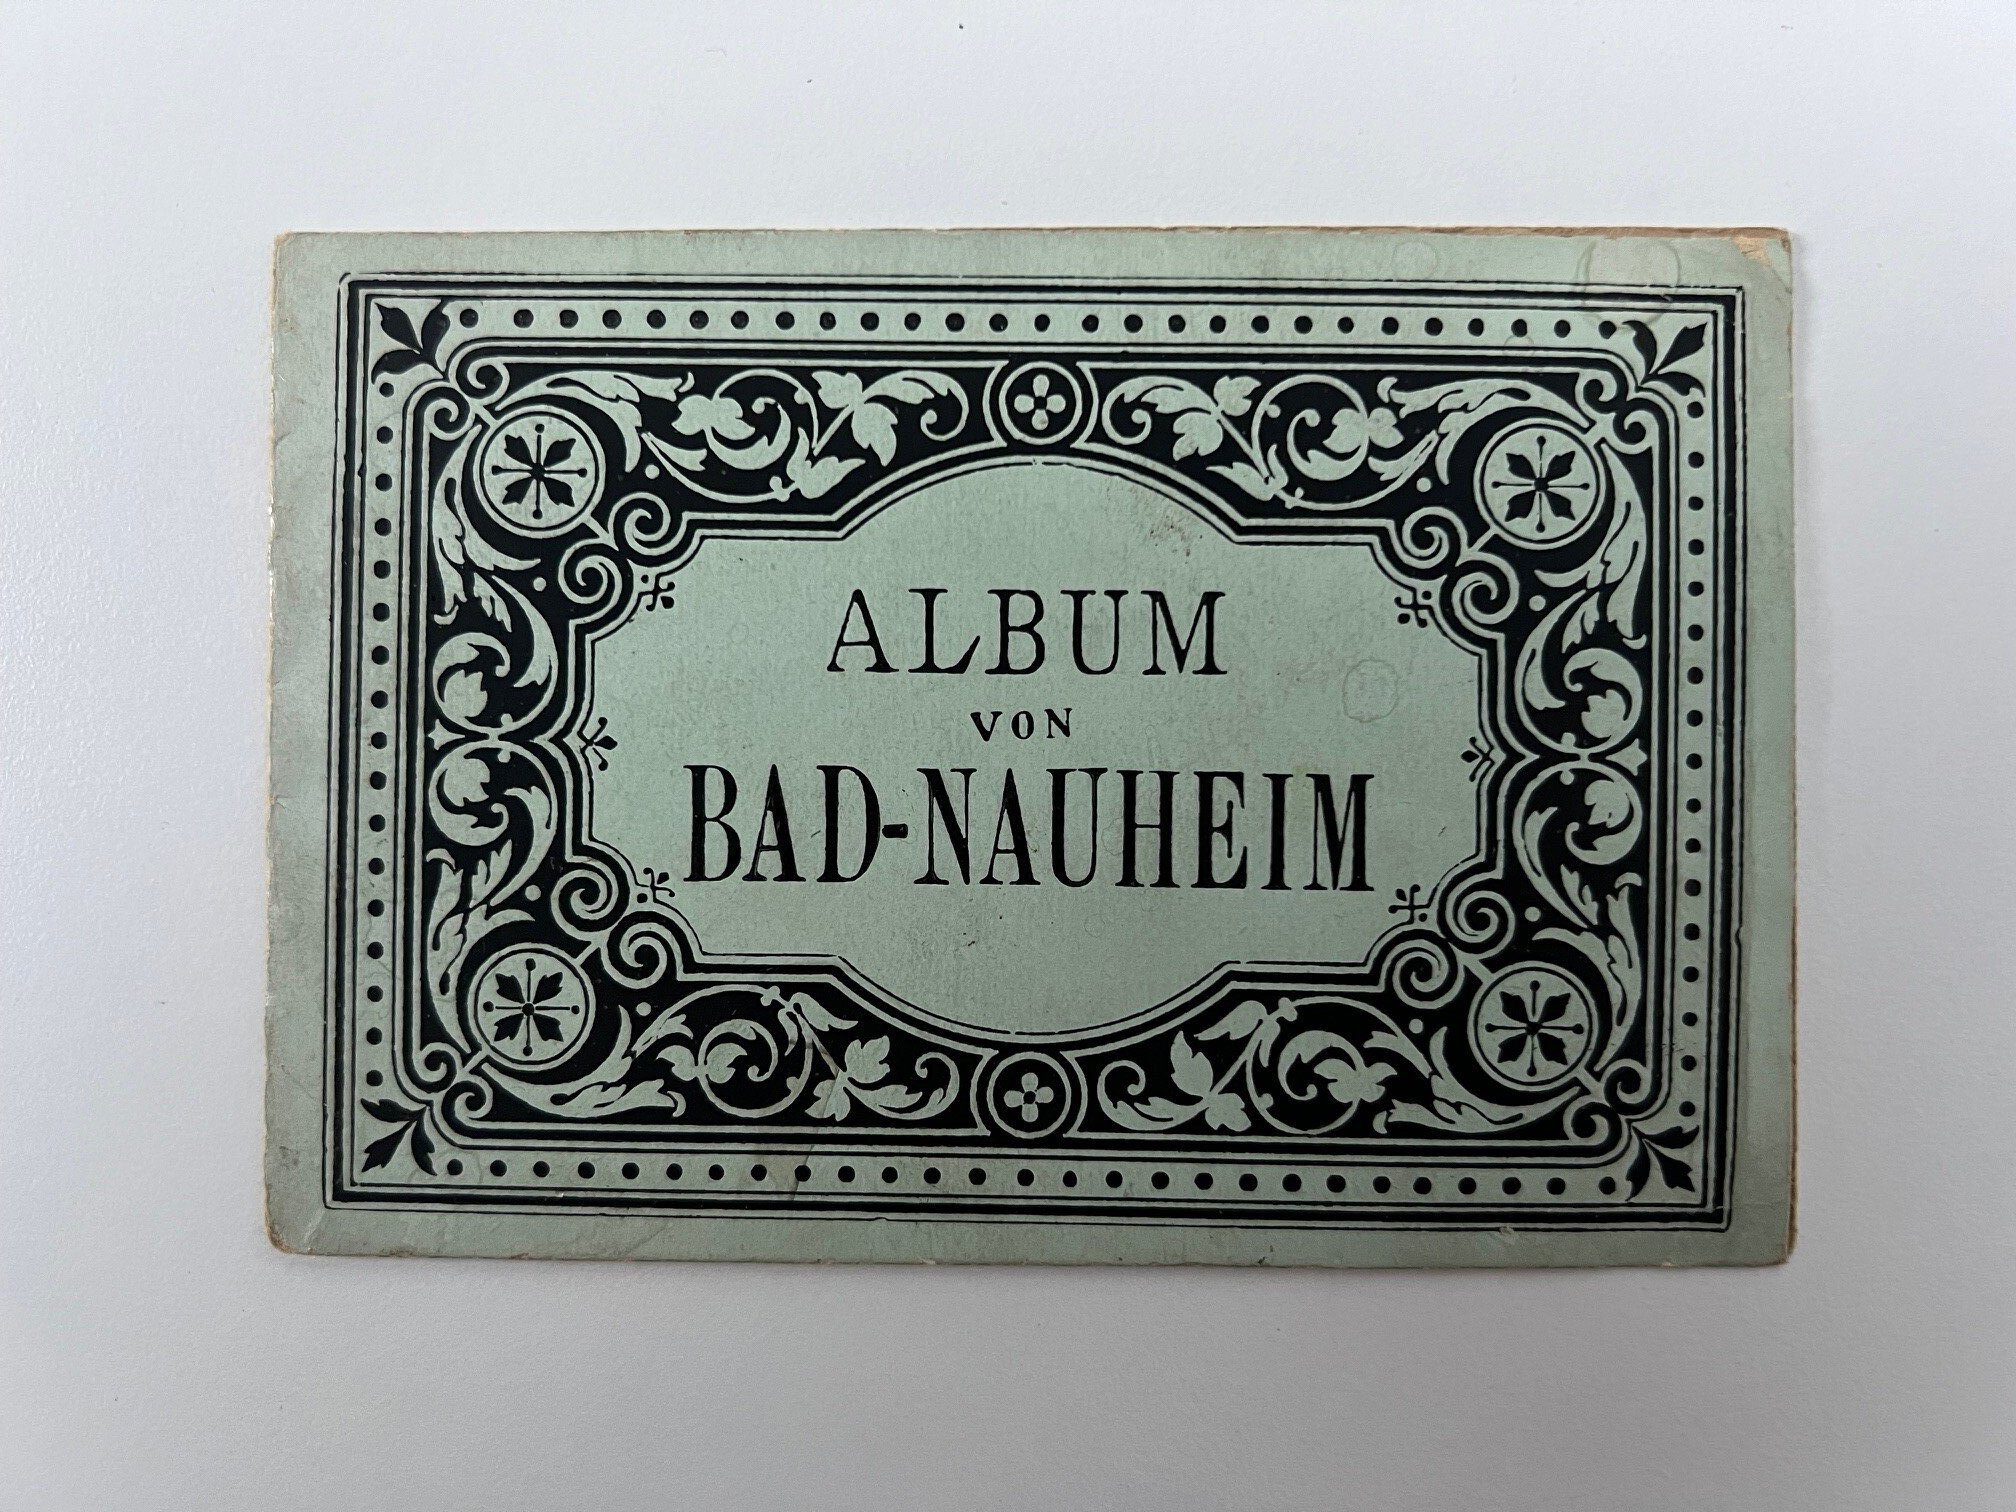 Unbekannter Hersteller, Album von Bad Nauheim, 6 Lithographien als Leporello, ca. 1890. (Taunus-Rhein-Main - Regionalgeschichtliche Sammlung Dr. Stefan Naas CC BY-NC-SA)